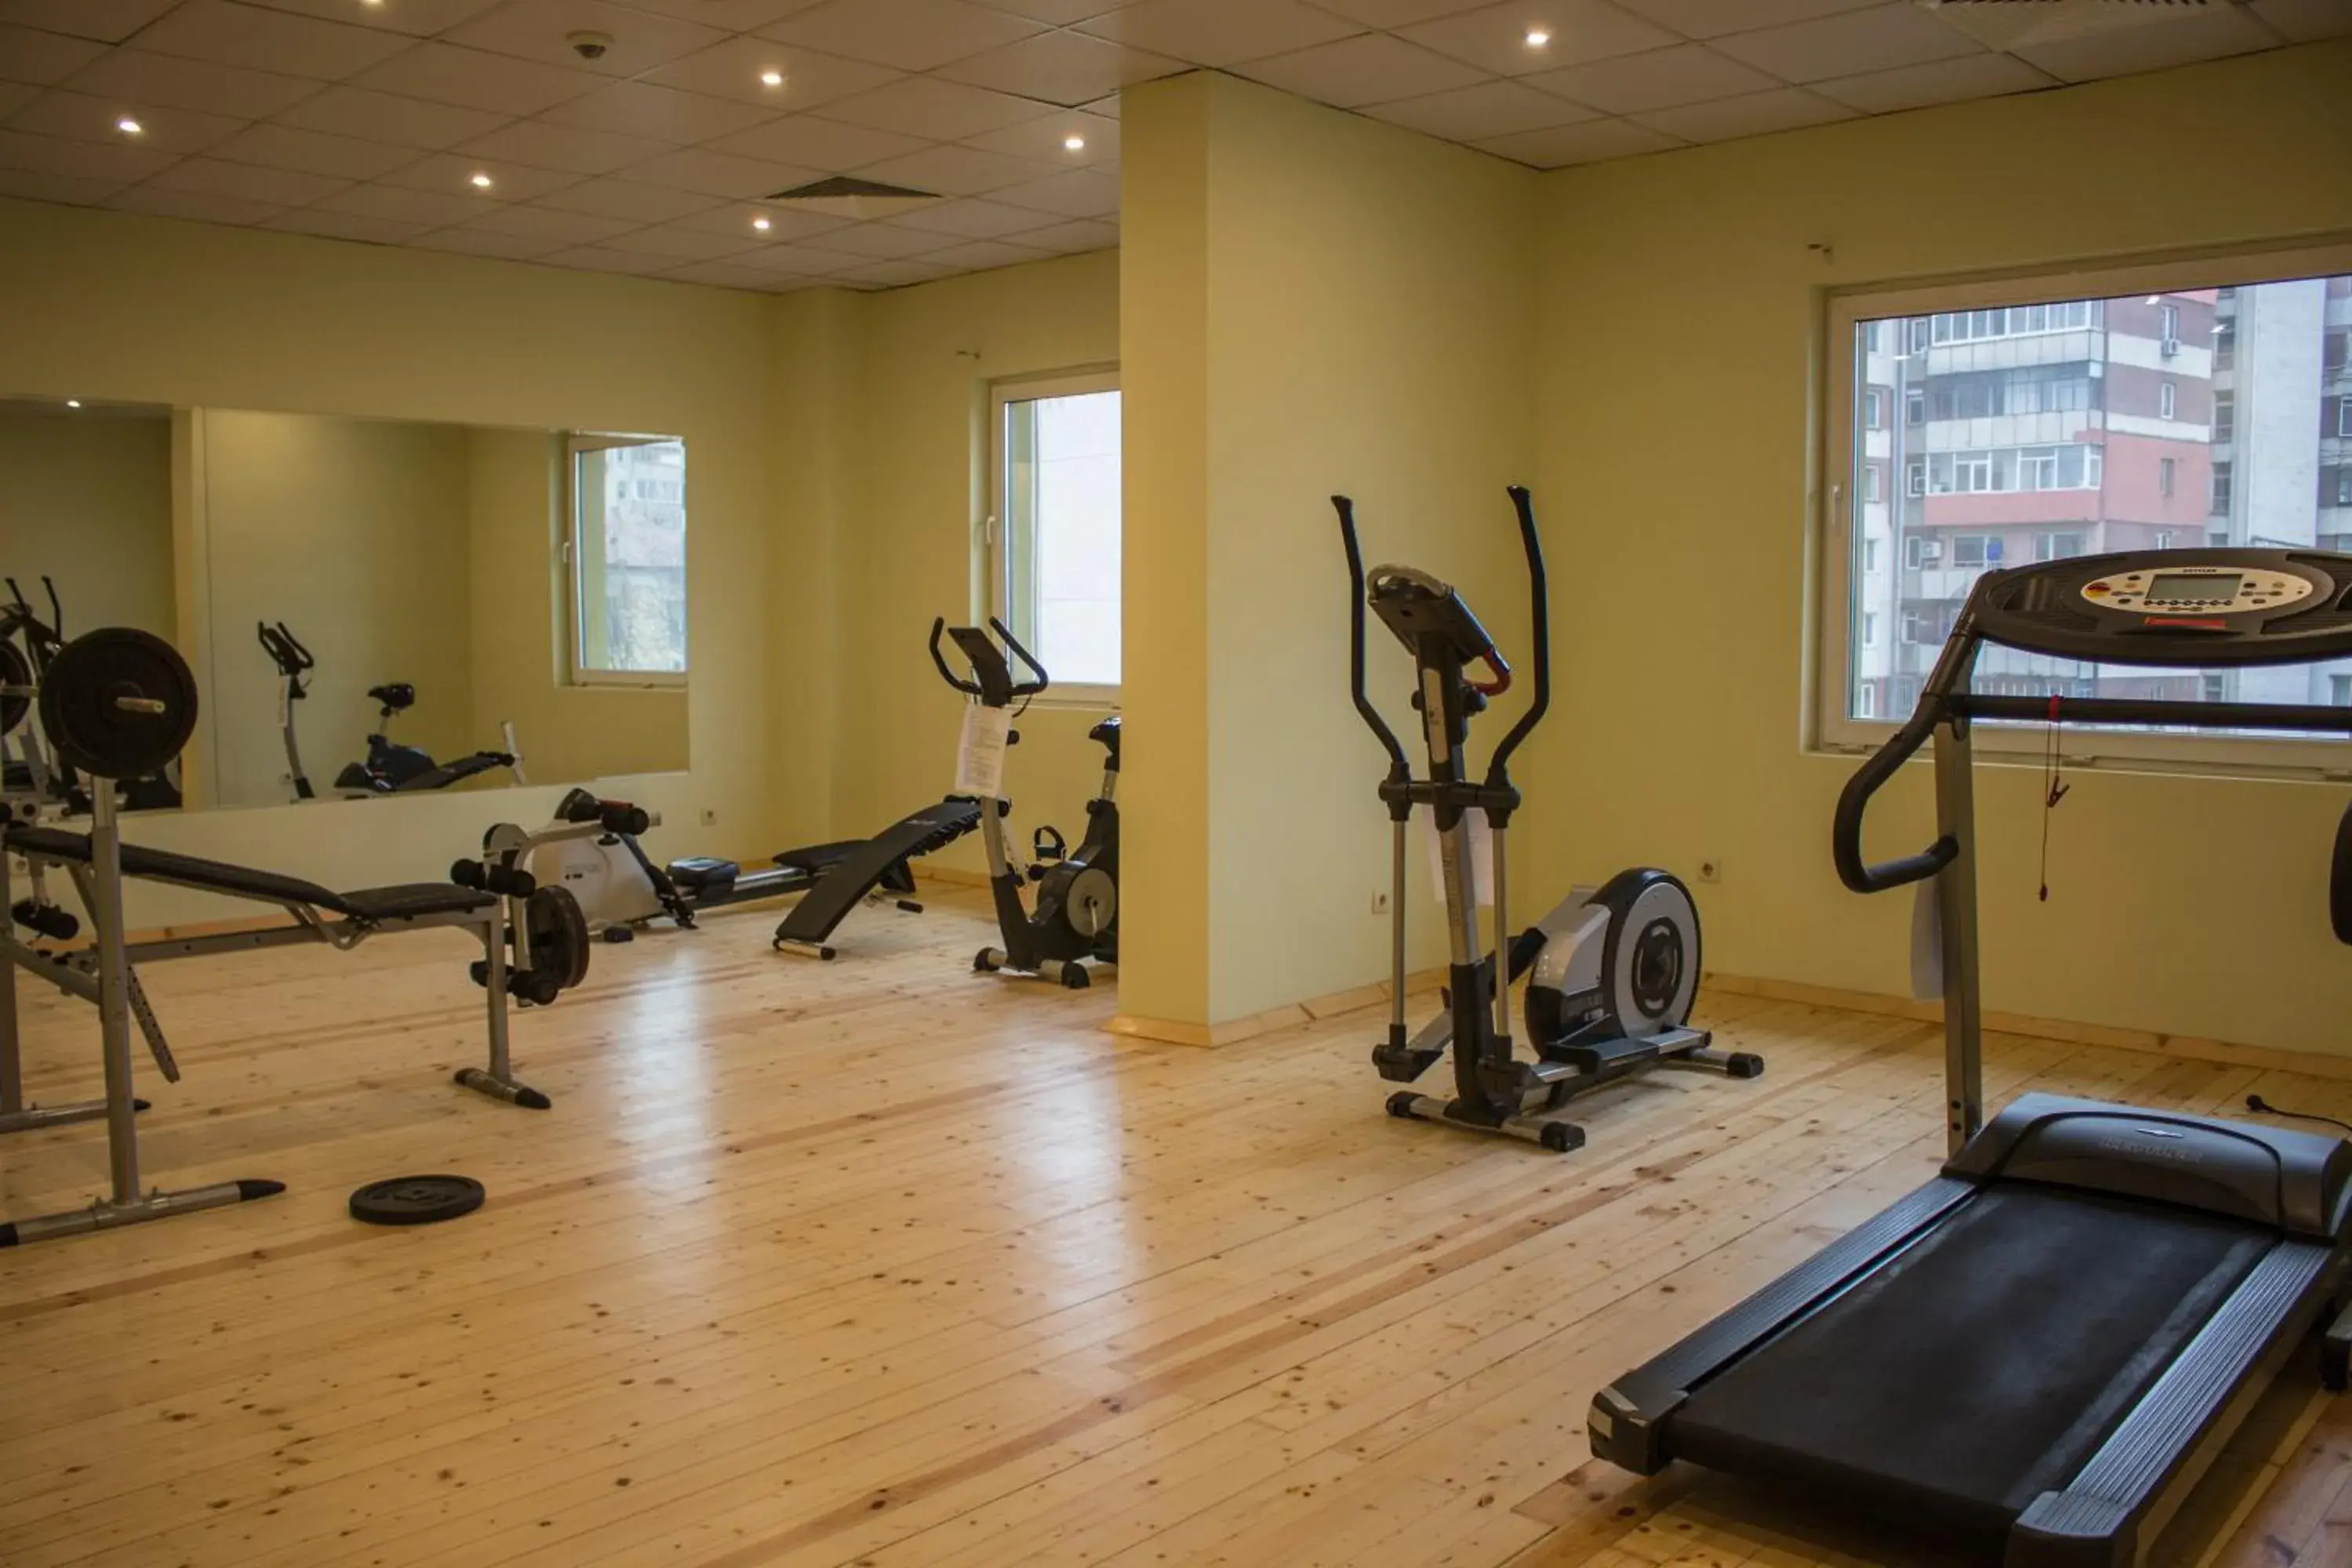 Fitness centre/facilities, Fitness Center/Facilities in Hotel Golden Tulip Varna